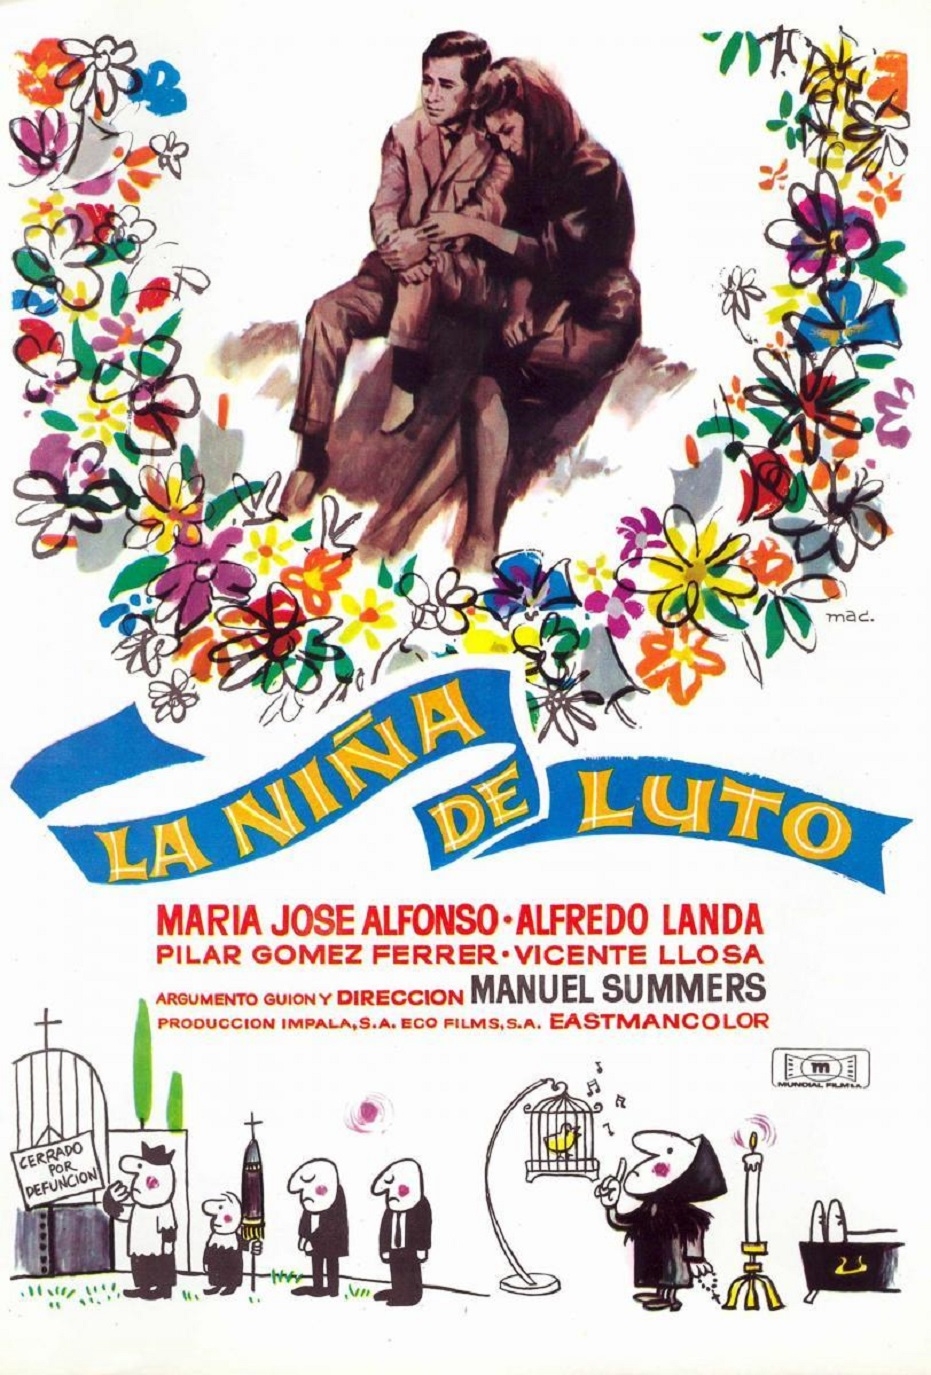 Lectura del manifiesto firmado por cineastas andaluces conmemorativo del 25 aniversario del fallecimiento de Manolo Summers